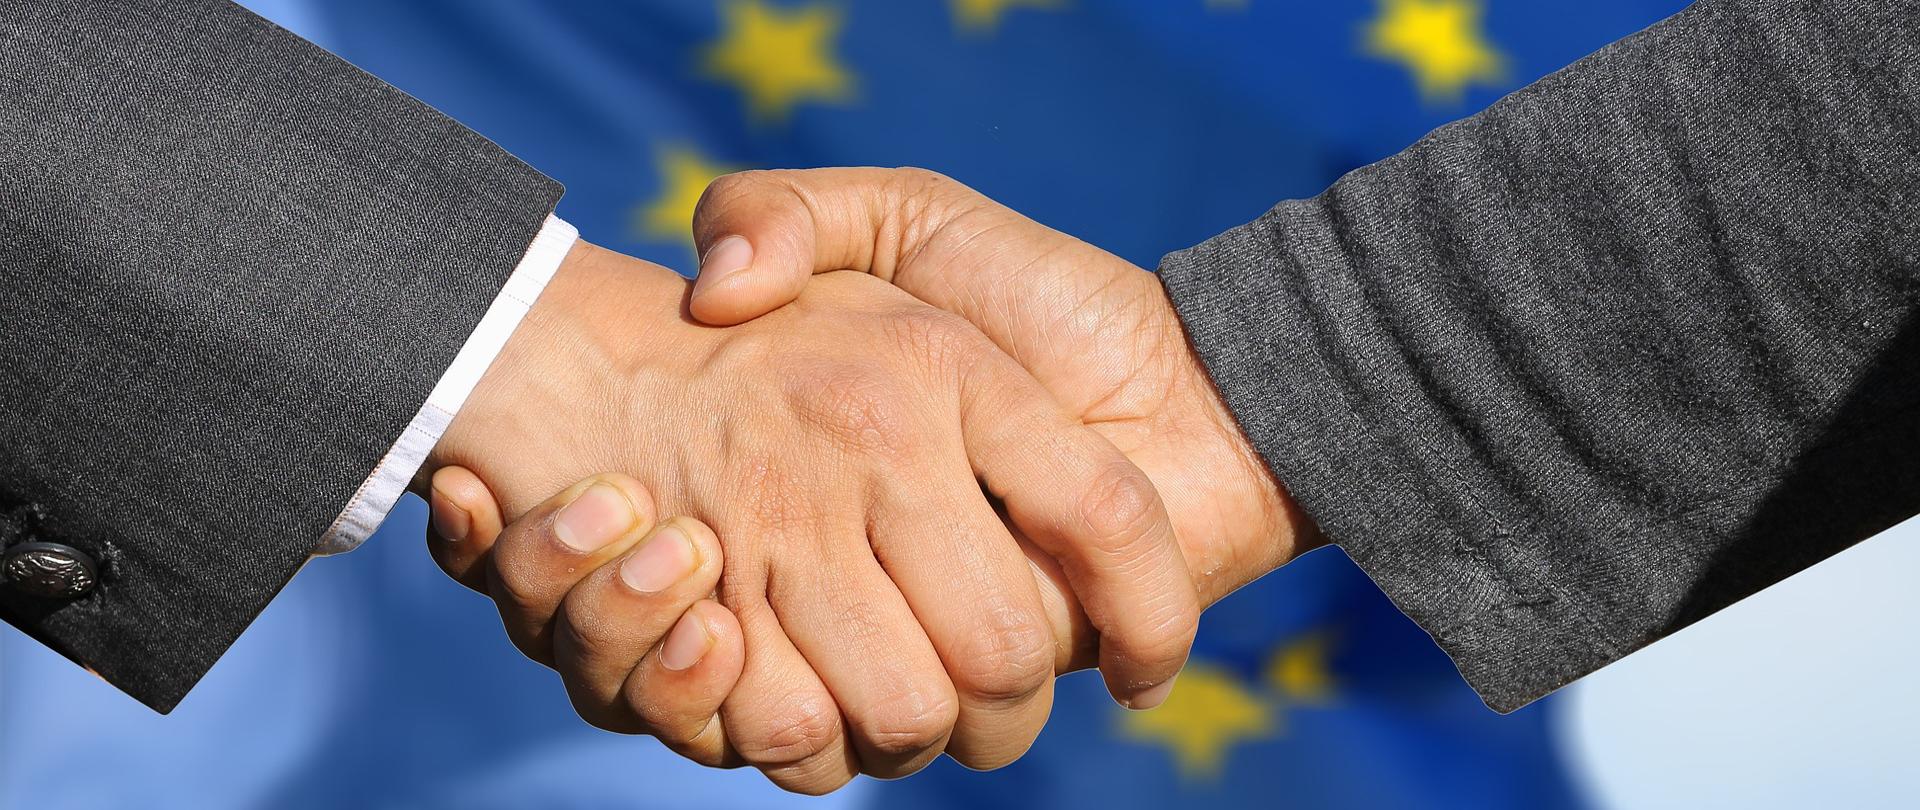 witające się dłonie, za nimi flaga Unii Europejskiej